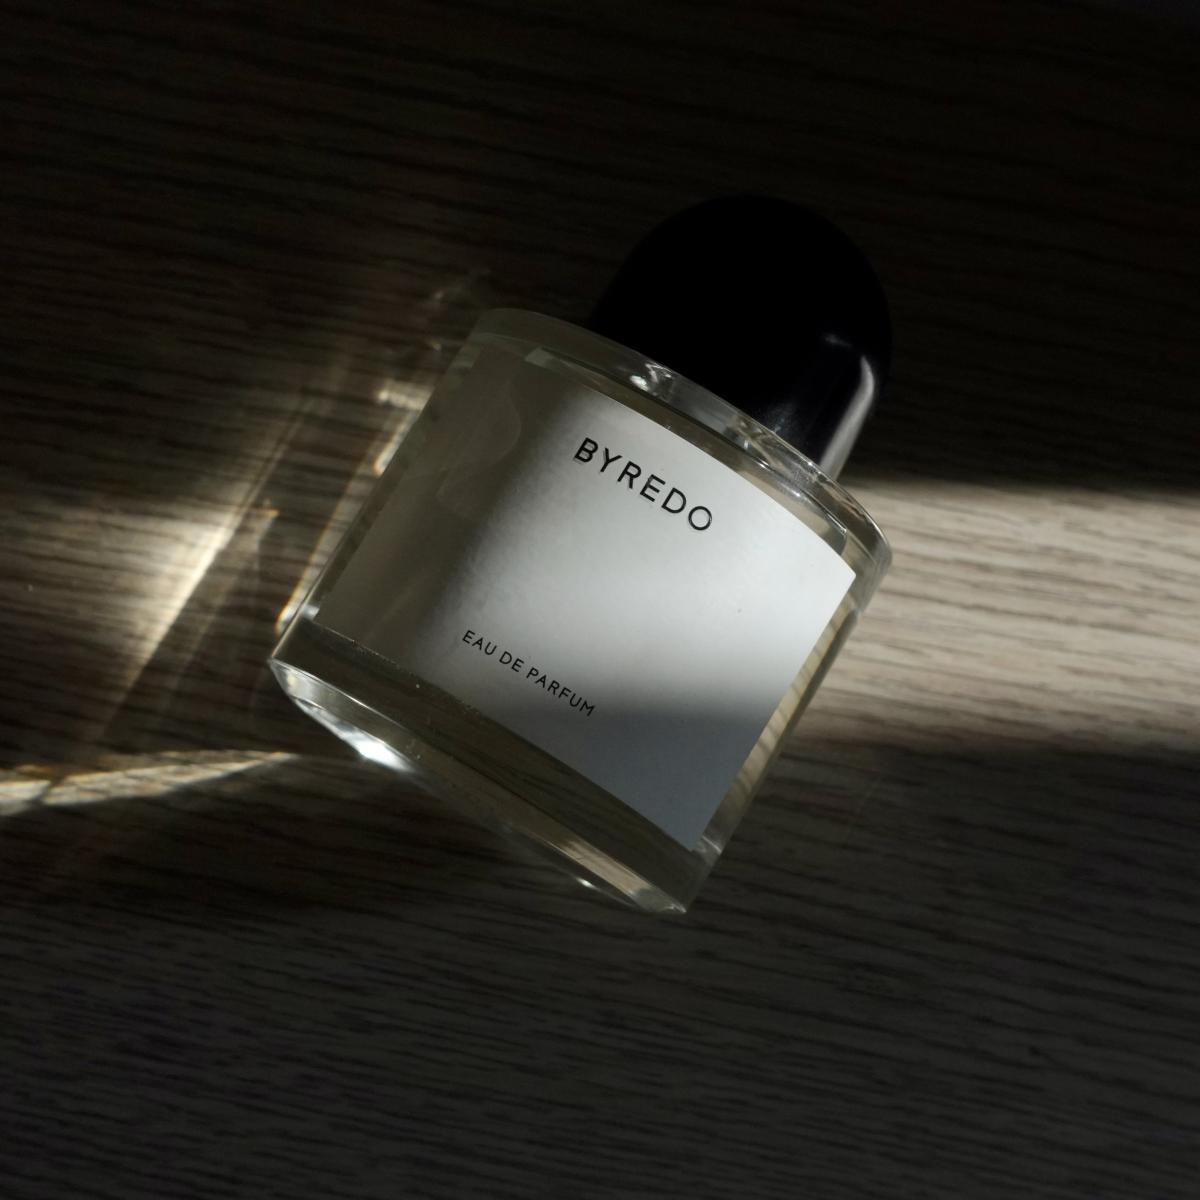 Byredo Byredo perfume - a fragrance for women and men 2016